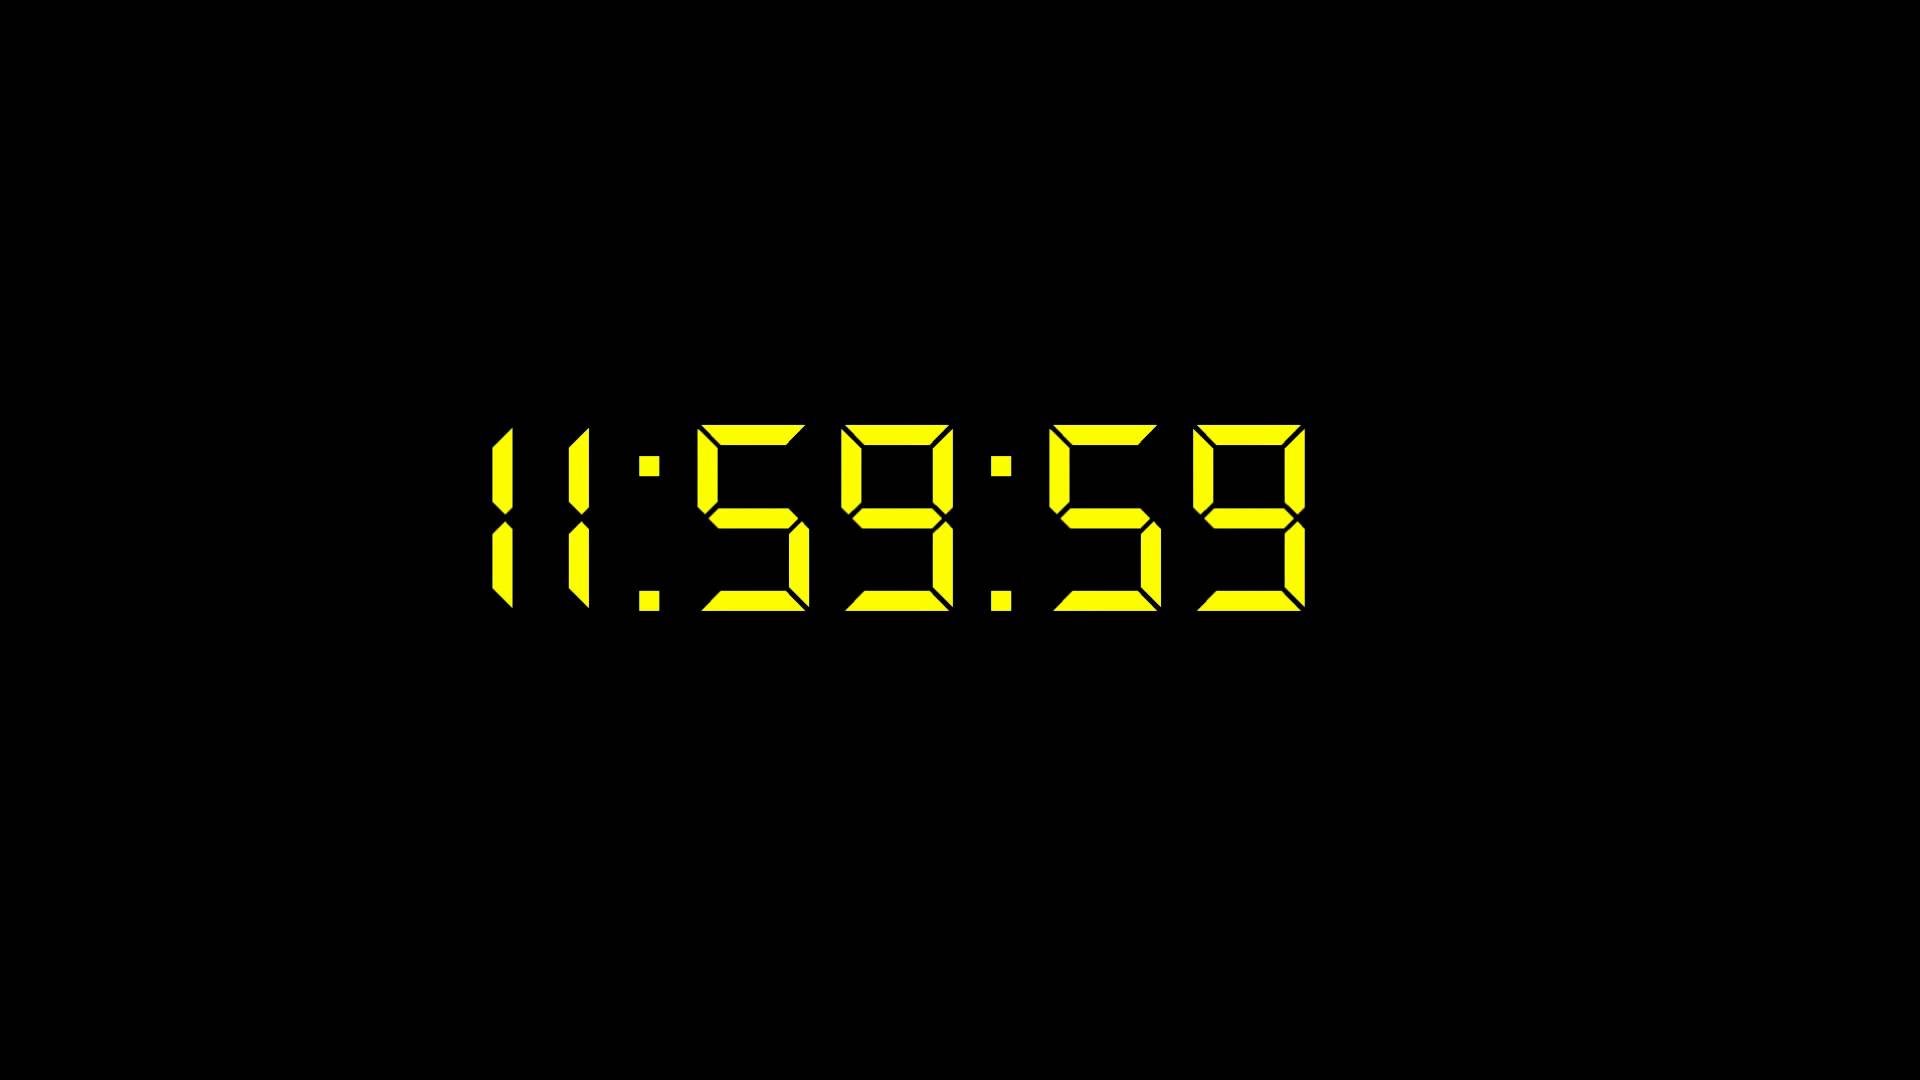 Таймер на десять. Скринсейвер цифровые часы. Таймер. Скринсейвер электронные часы. Часы на черном фоне.